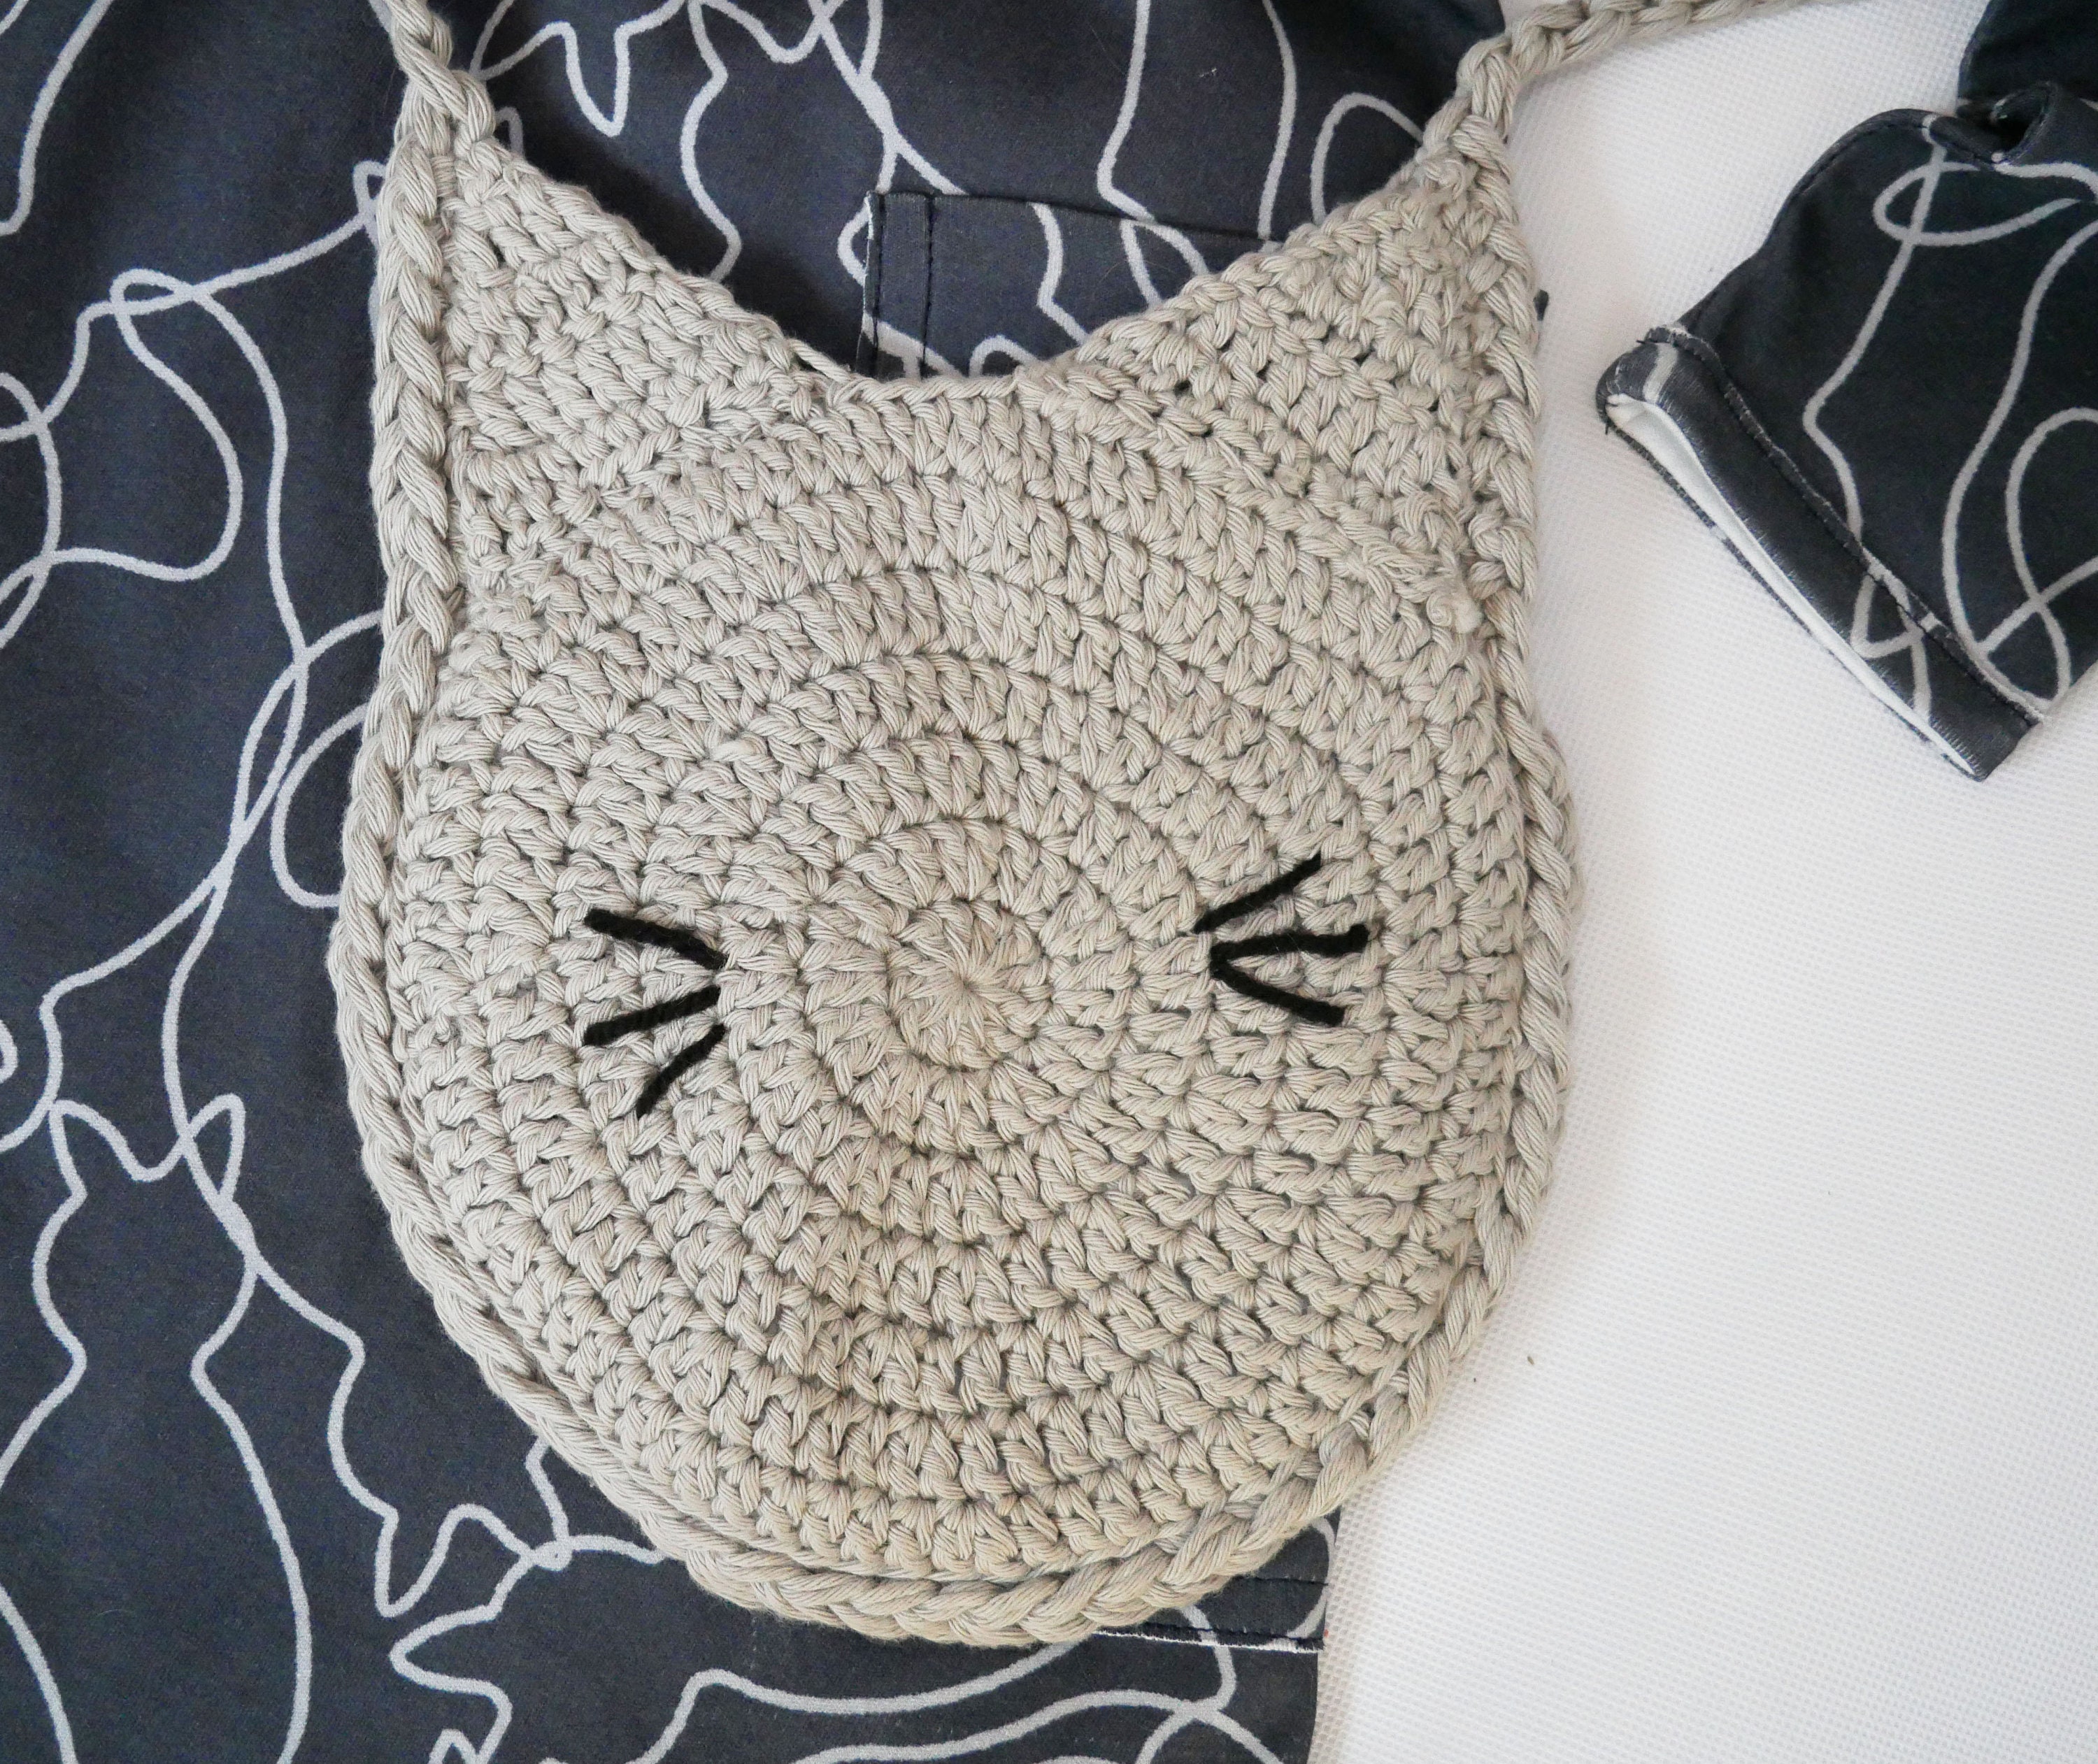 Gucci Kids cat-print Bag - Farfetch